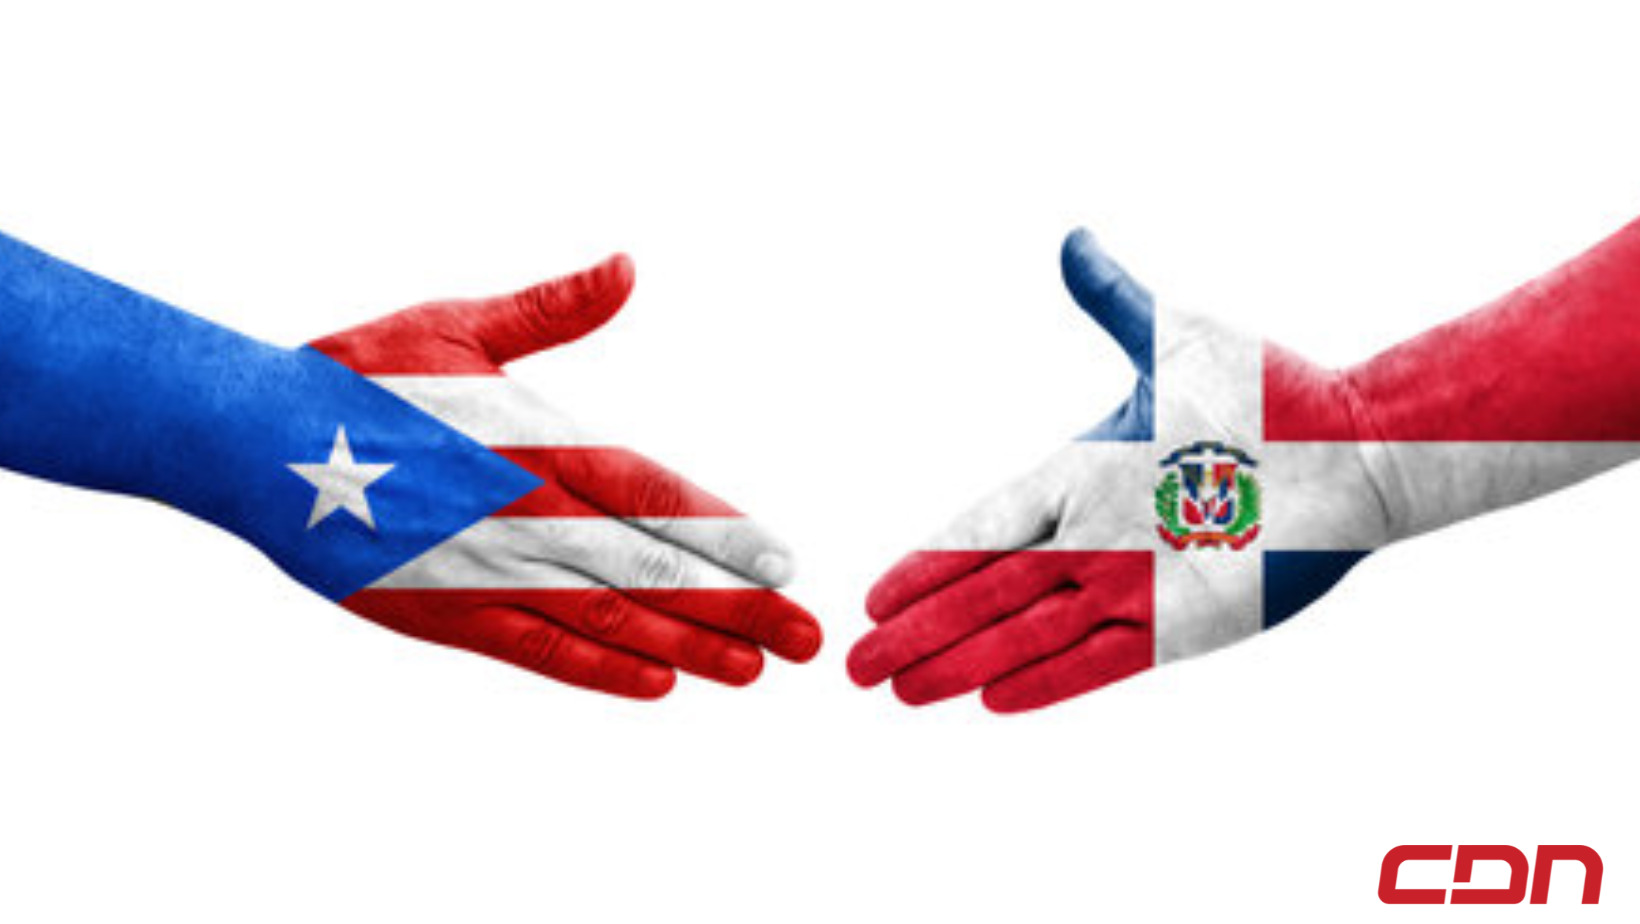 Puerto Rico organiza actividad caritativa en apoyo a las víctimas y damnificados de tragedia en RD